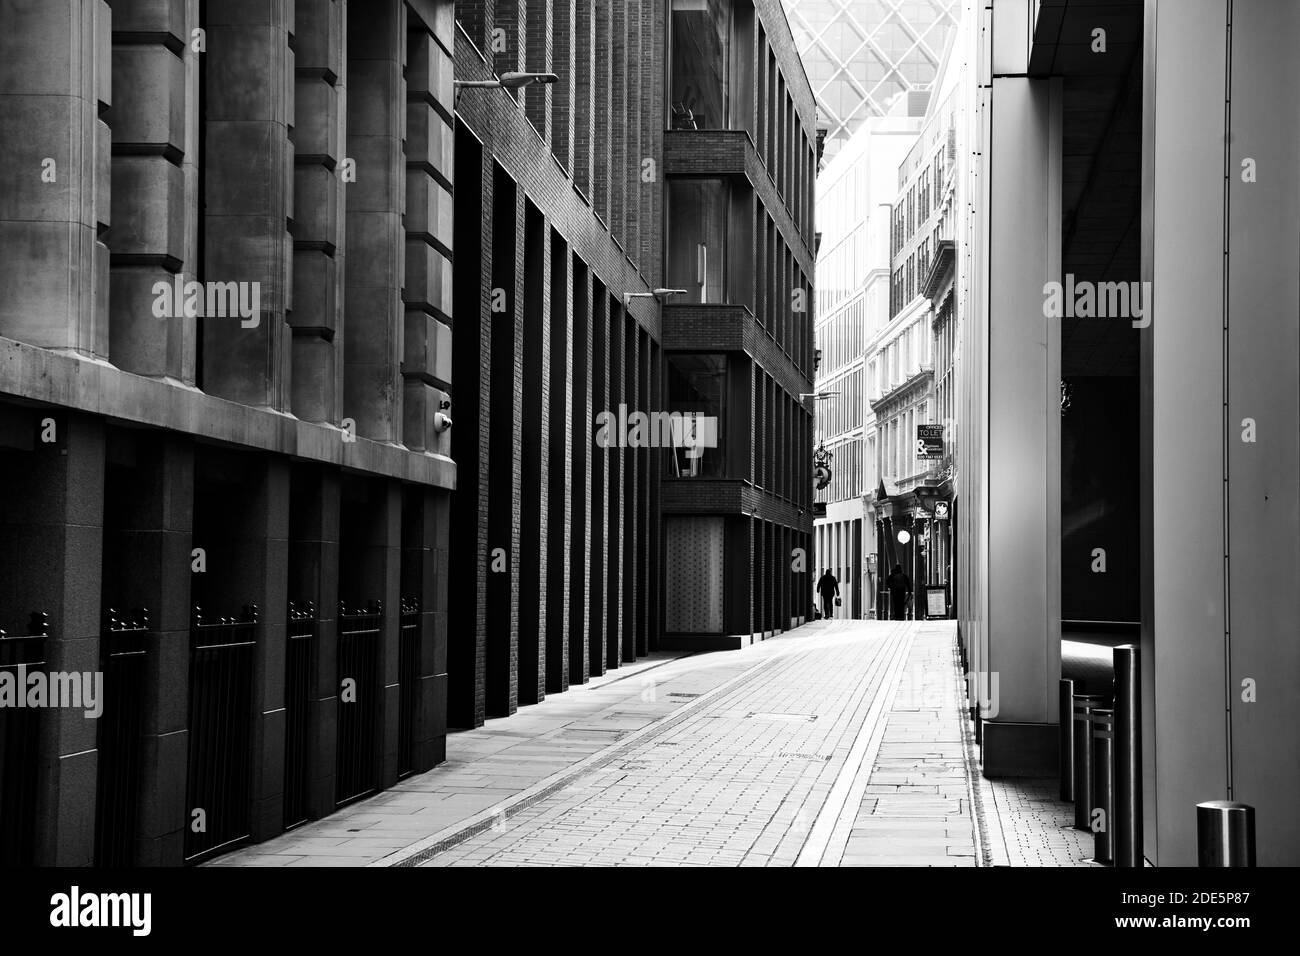 Noir et blanc calme, rues vides de Londres en Angleterre pendant le confinement du coronavirus Covid-19, montrant l'impact de la pandémie mondiale au Royaume-Uni, en Europe Banque D'Images